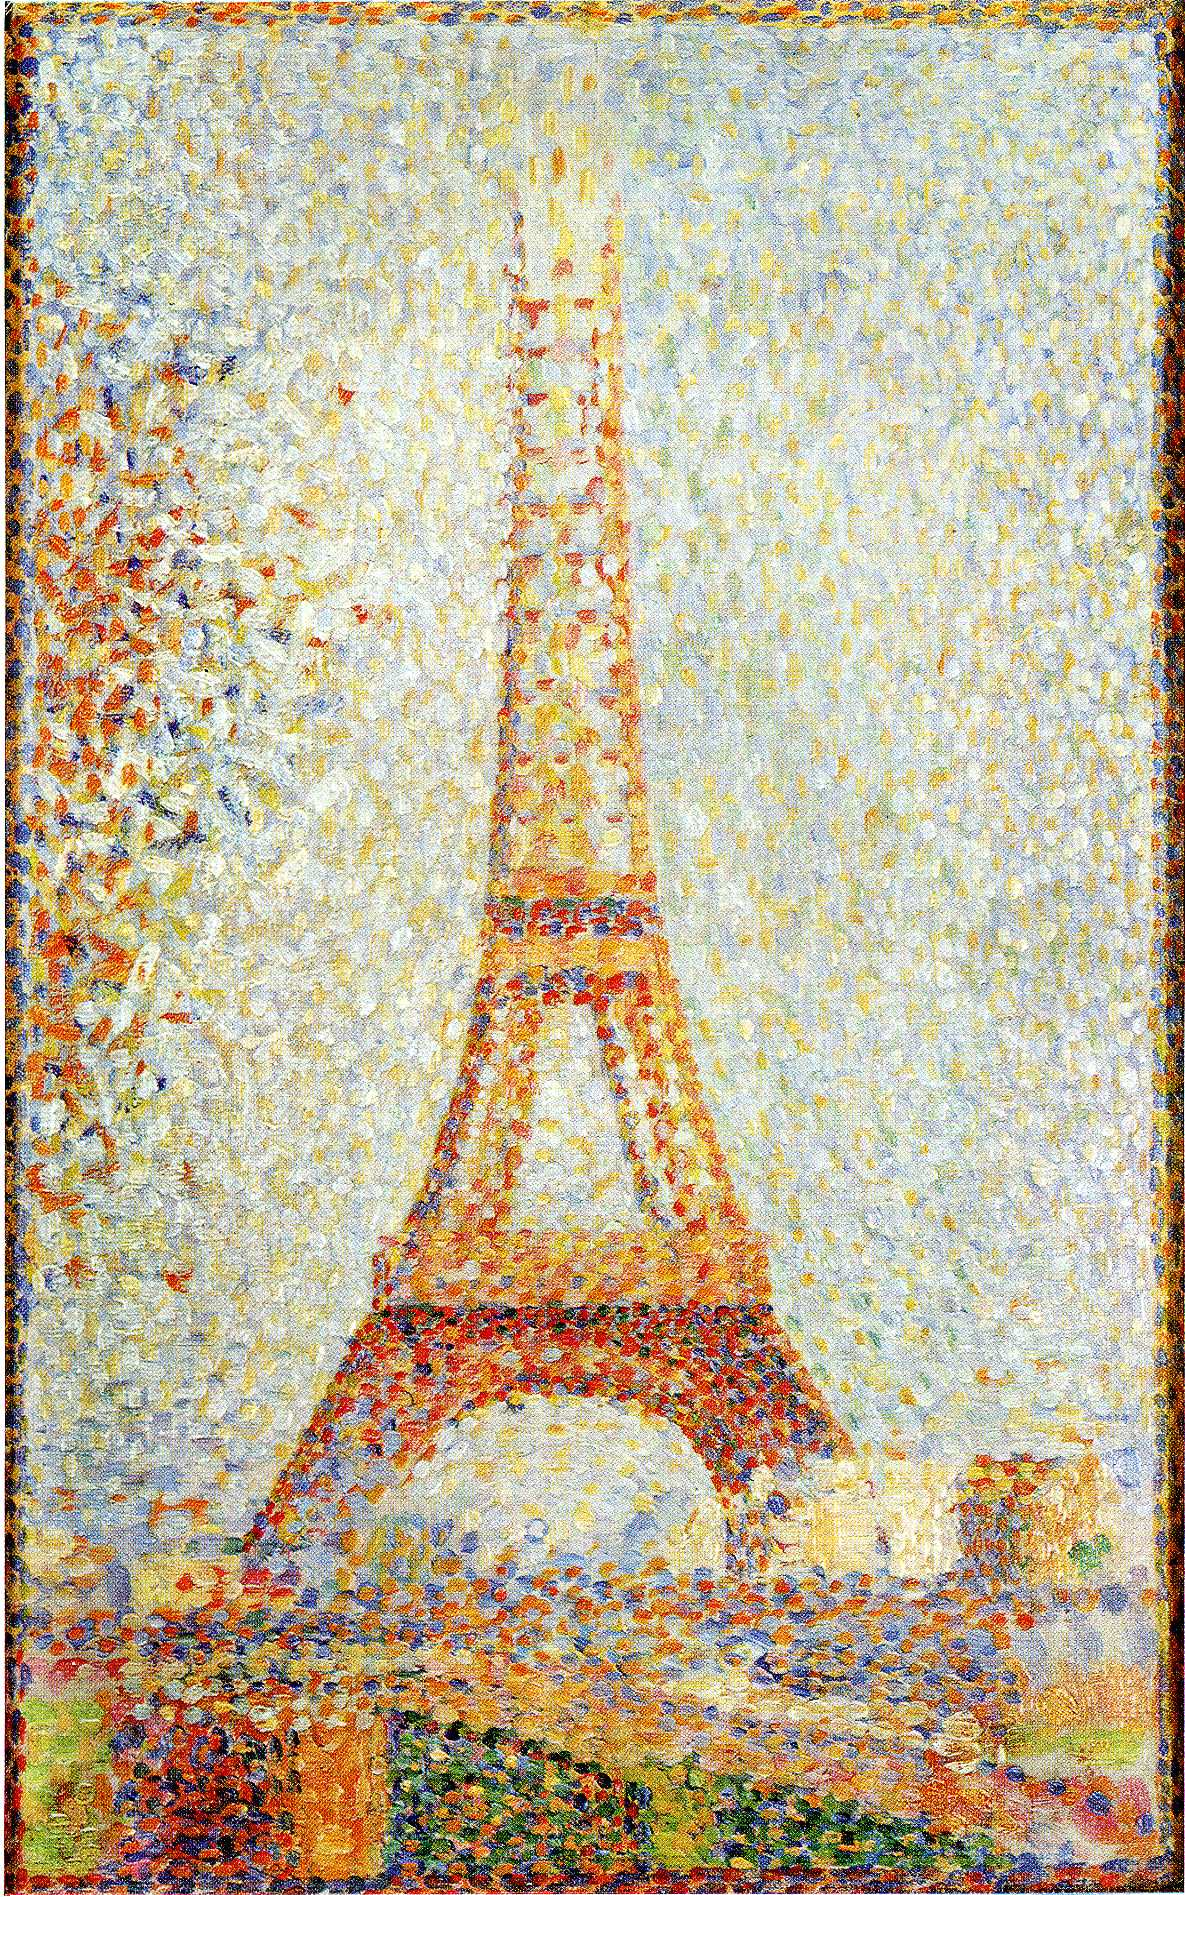 Wieża Eiffela by Georges Seurat - 1889 - 24 x 15 cm 